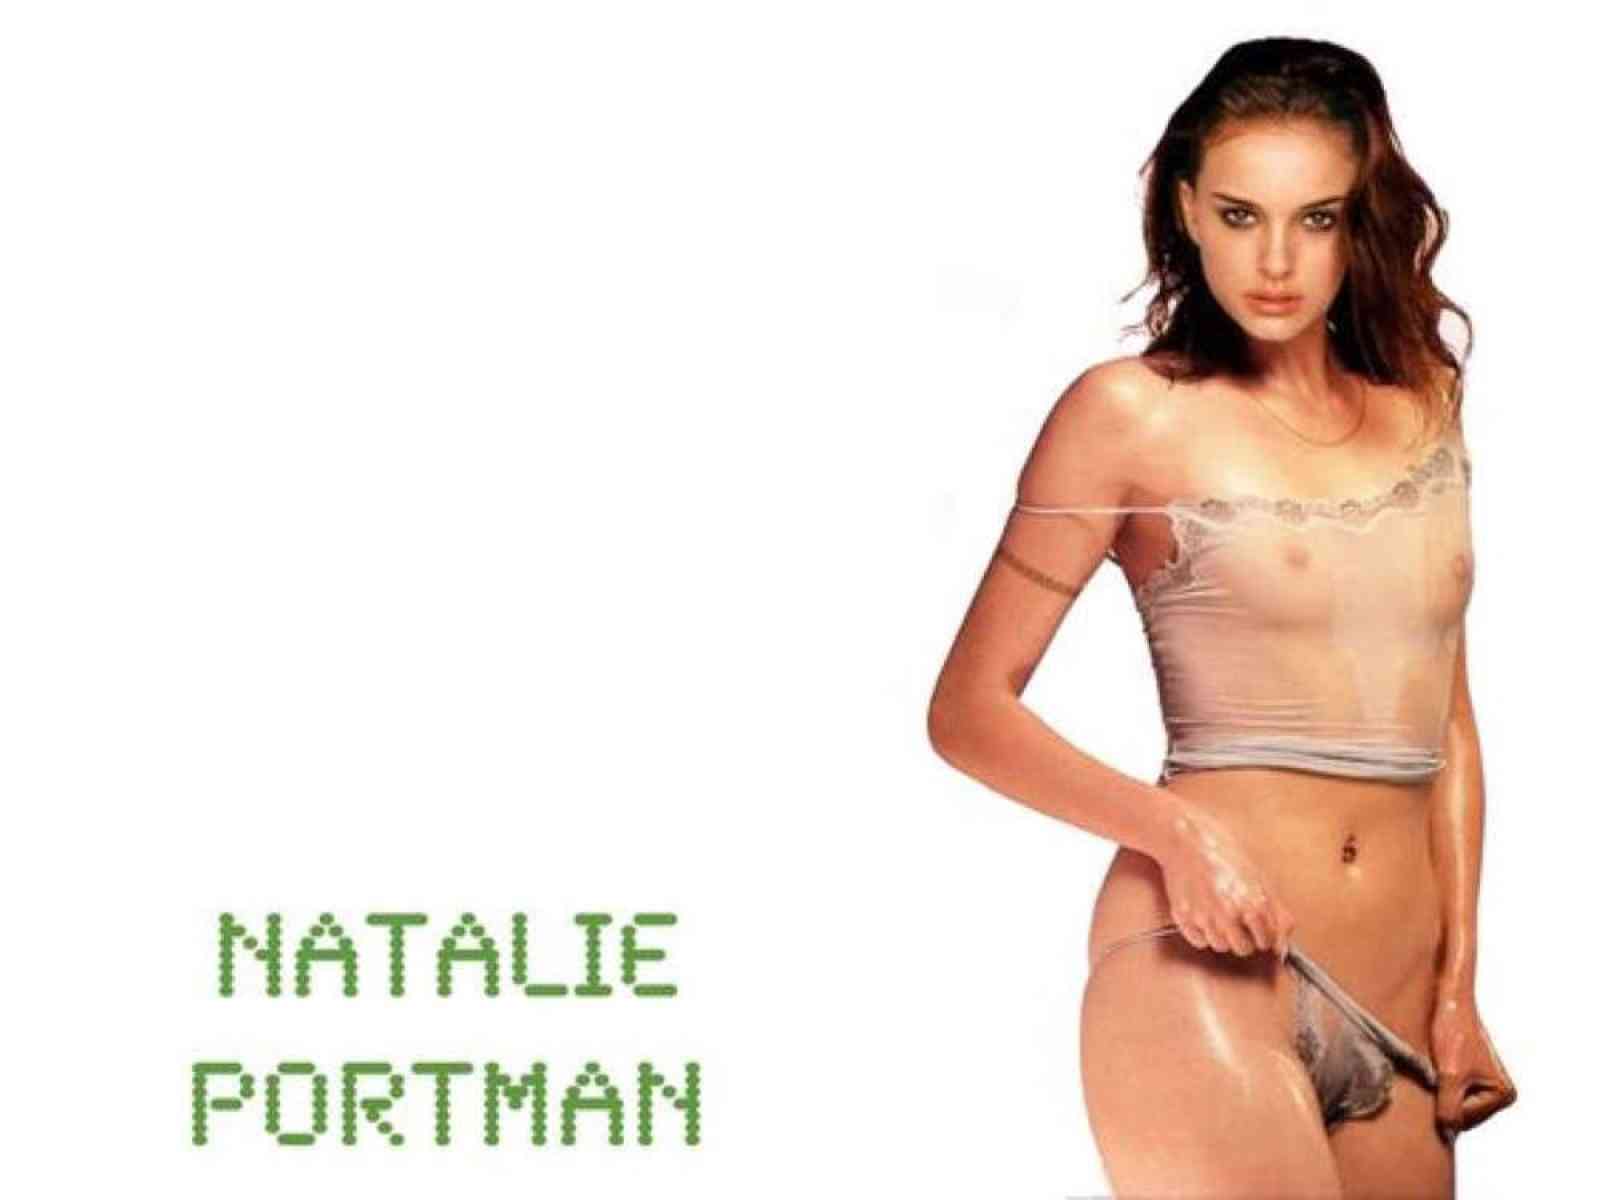 Portman pics natalie porn Natalie Portman